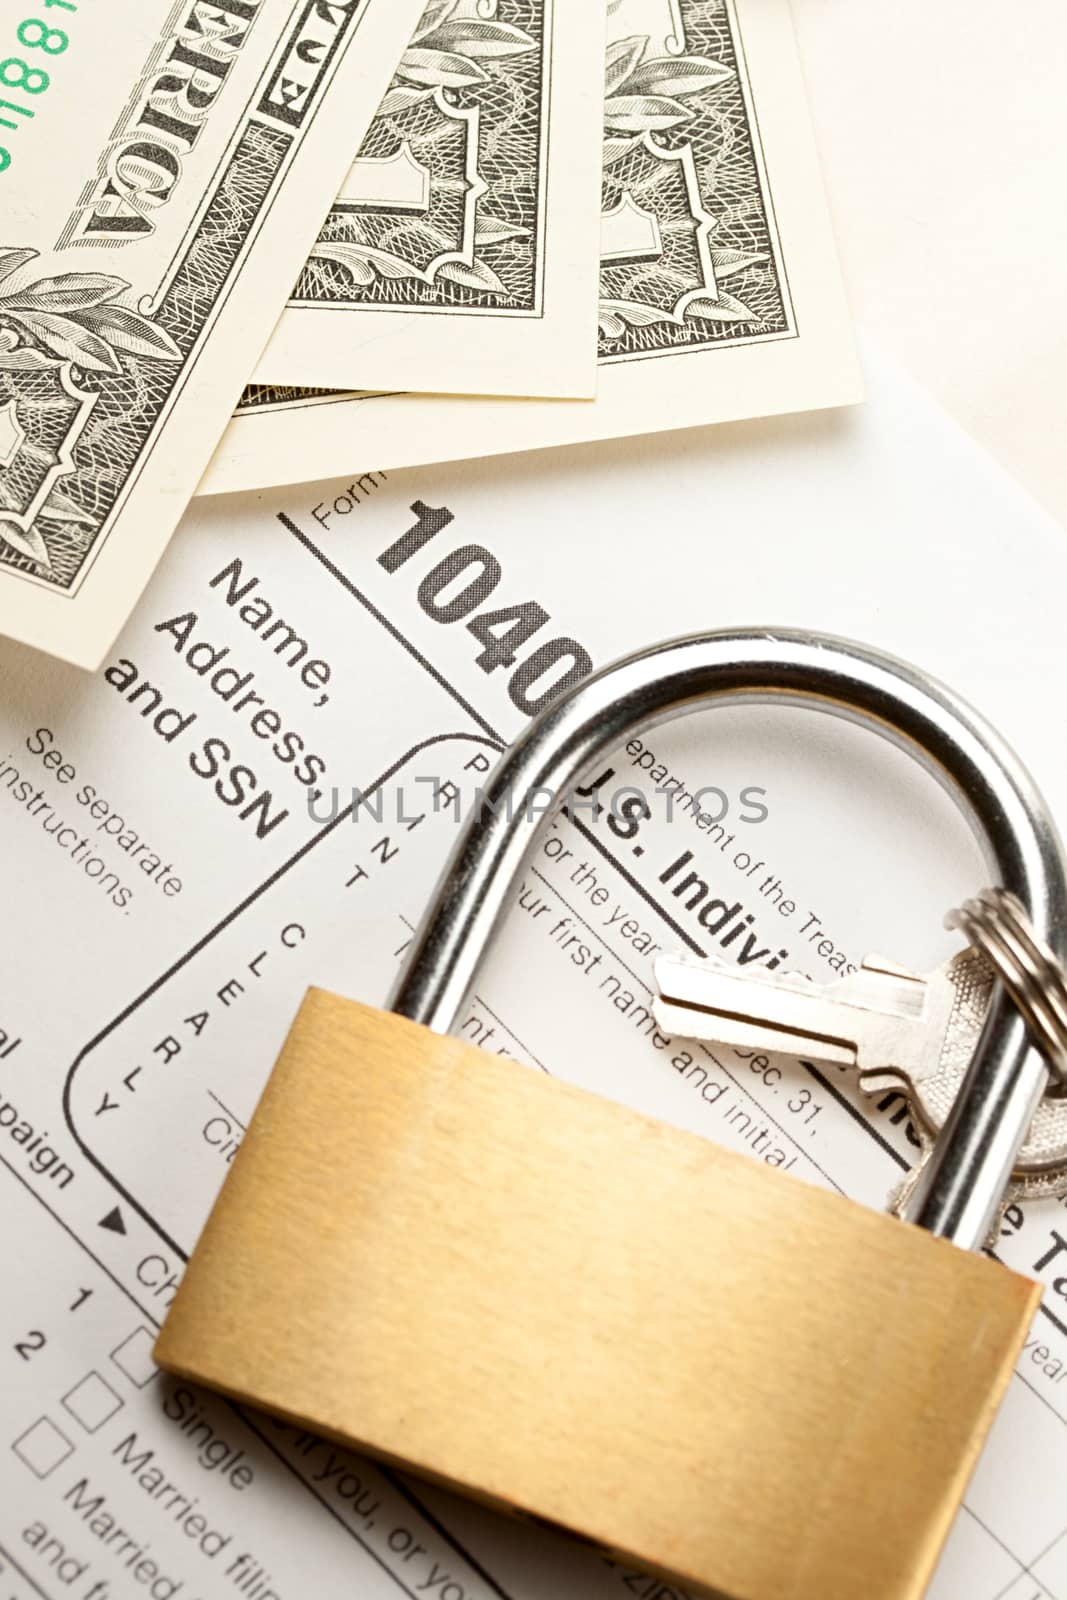 Tax form, dollars and key lock 